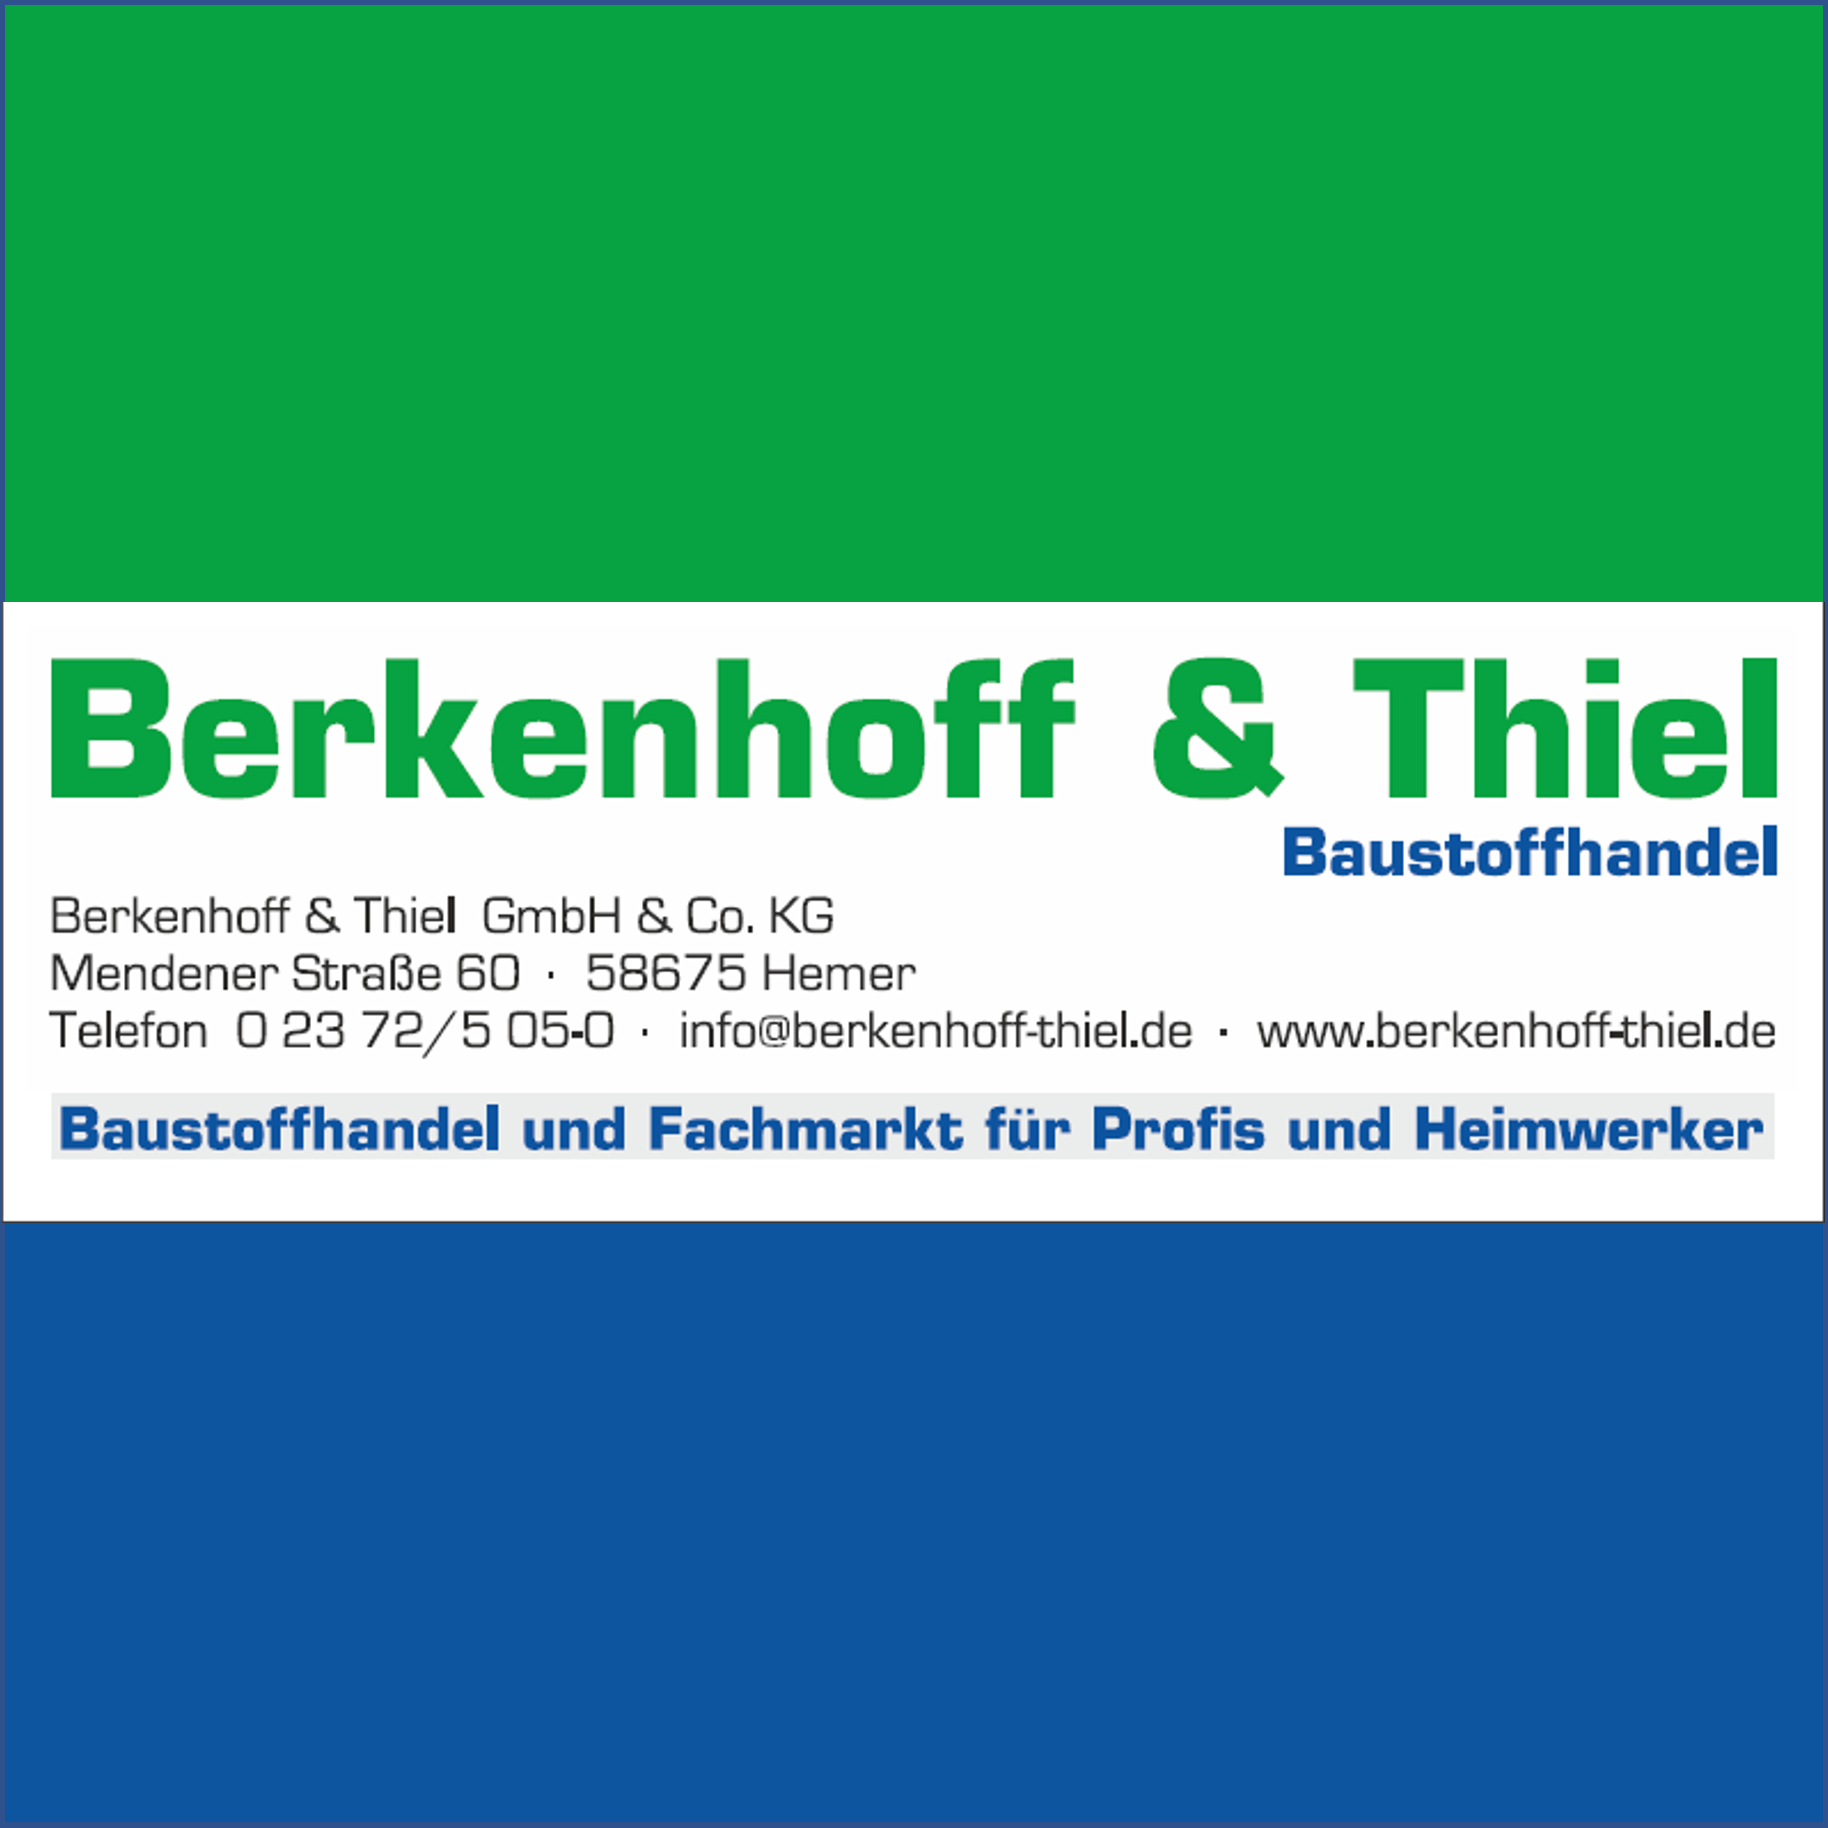 Berkenhoff & Thiel